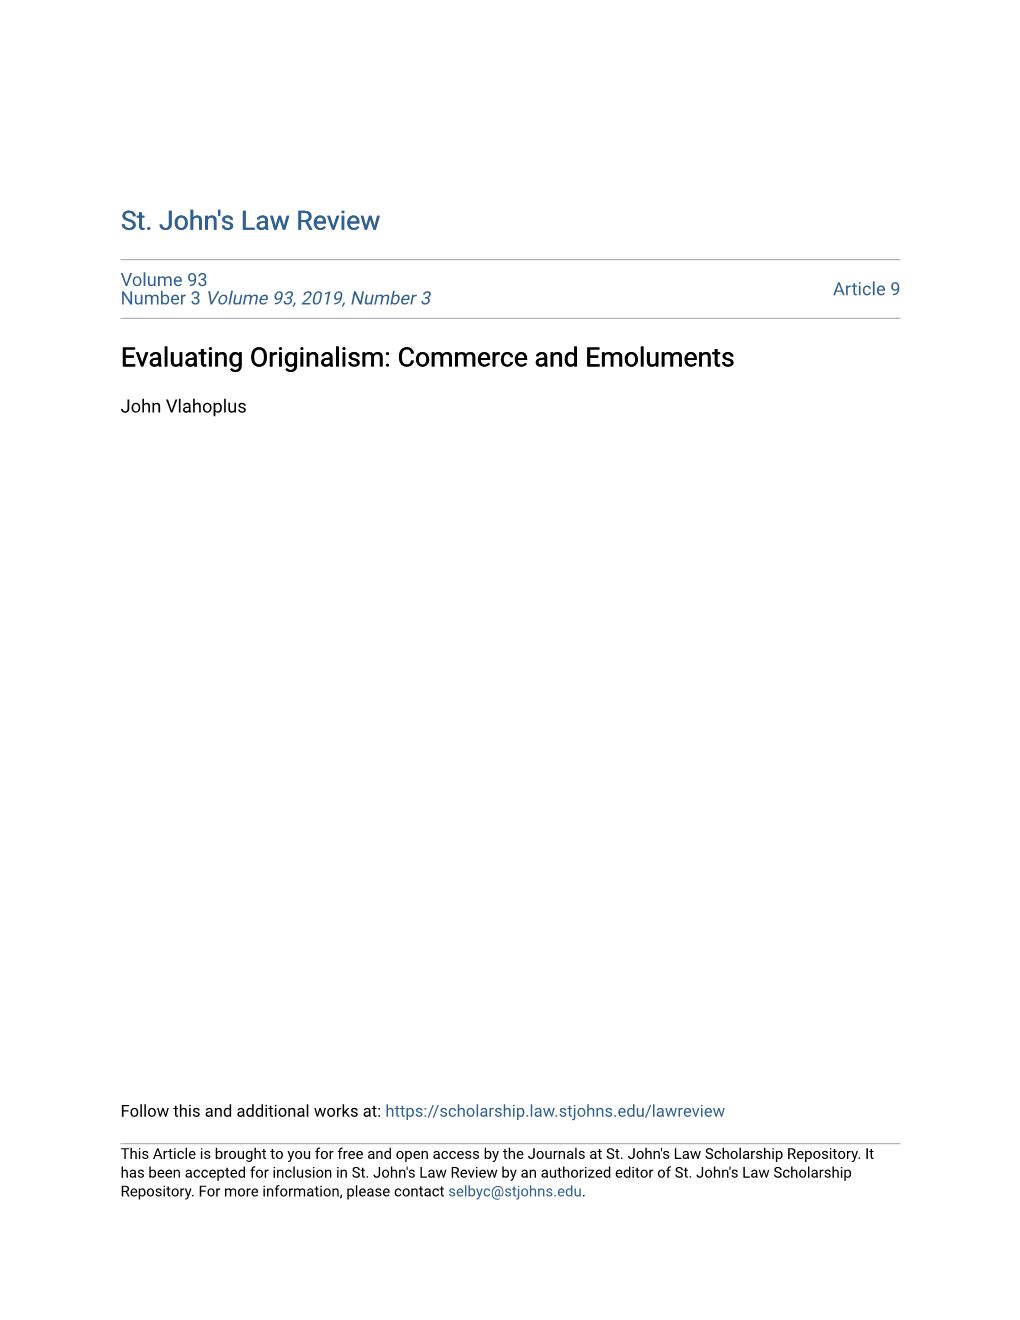 Evaluating Originalism: Commerce and Emoluments